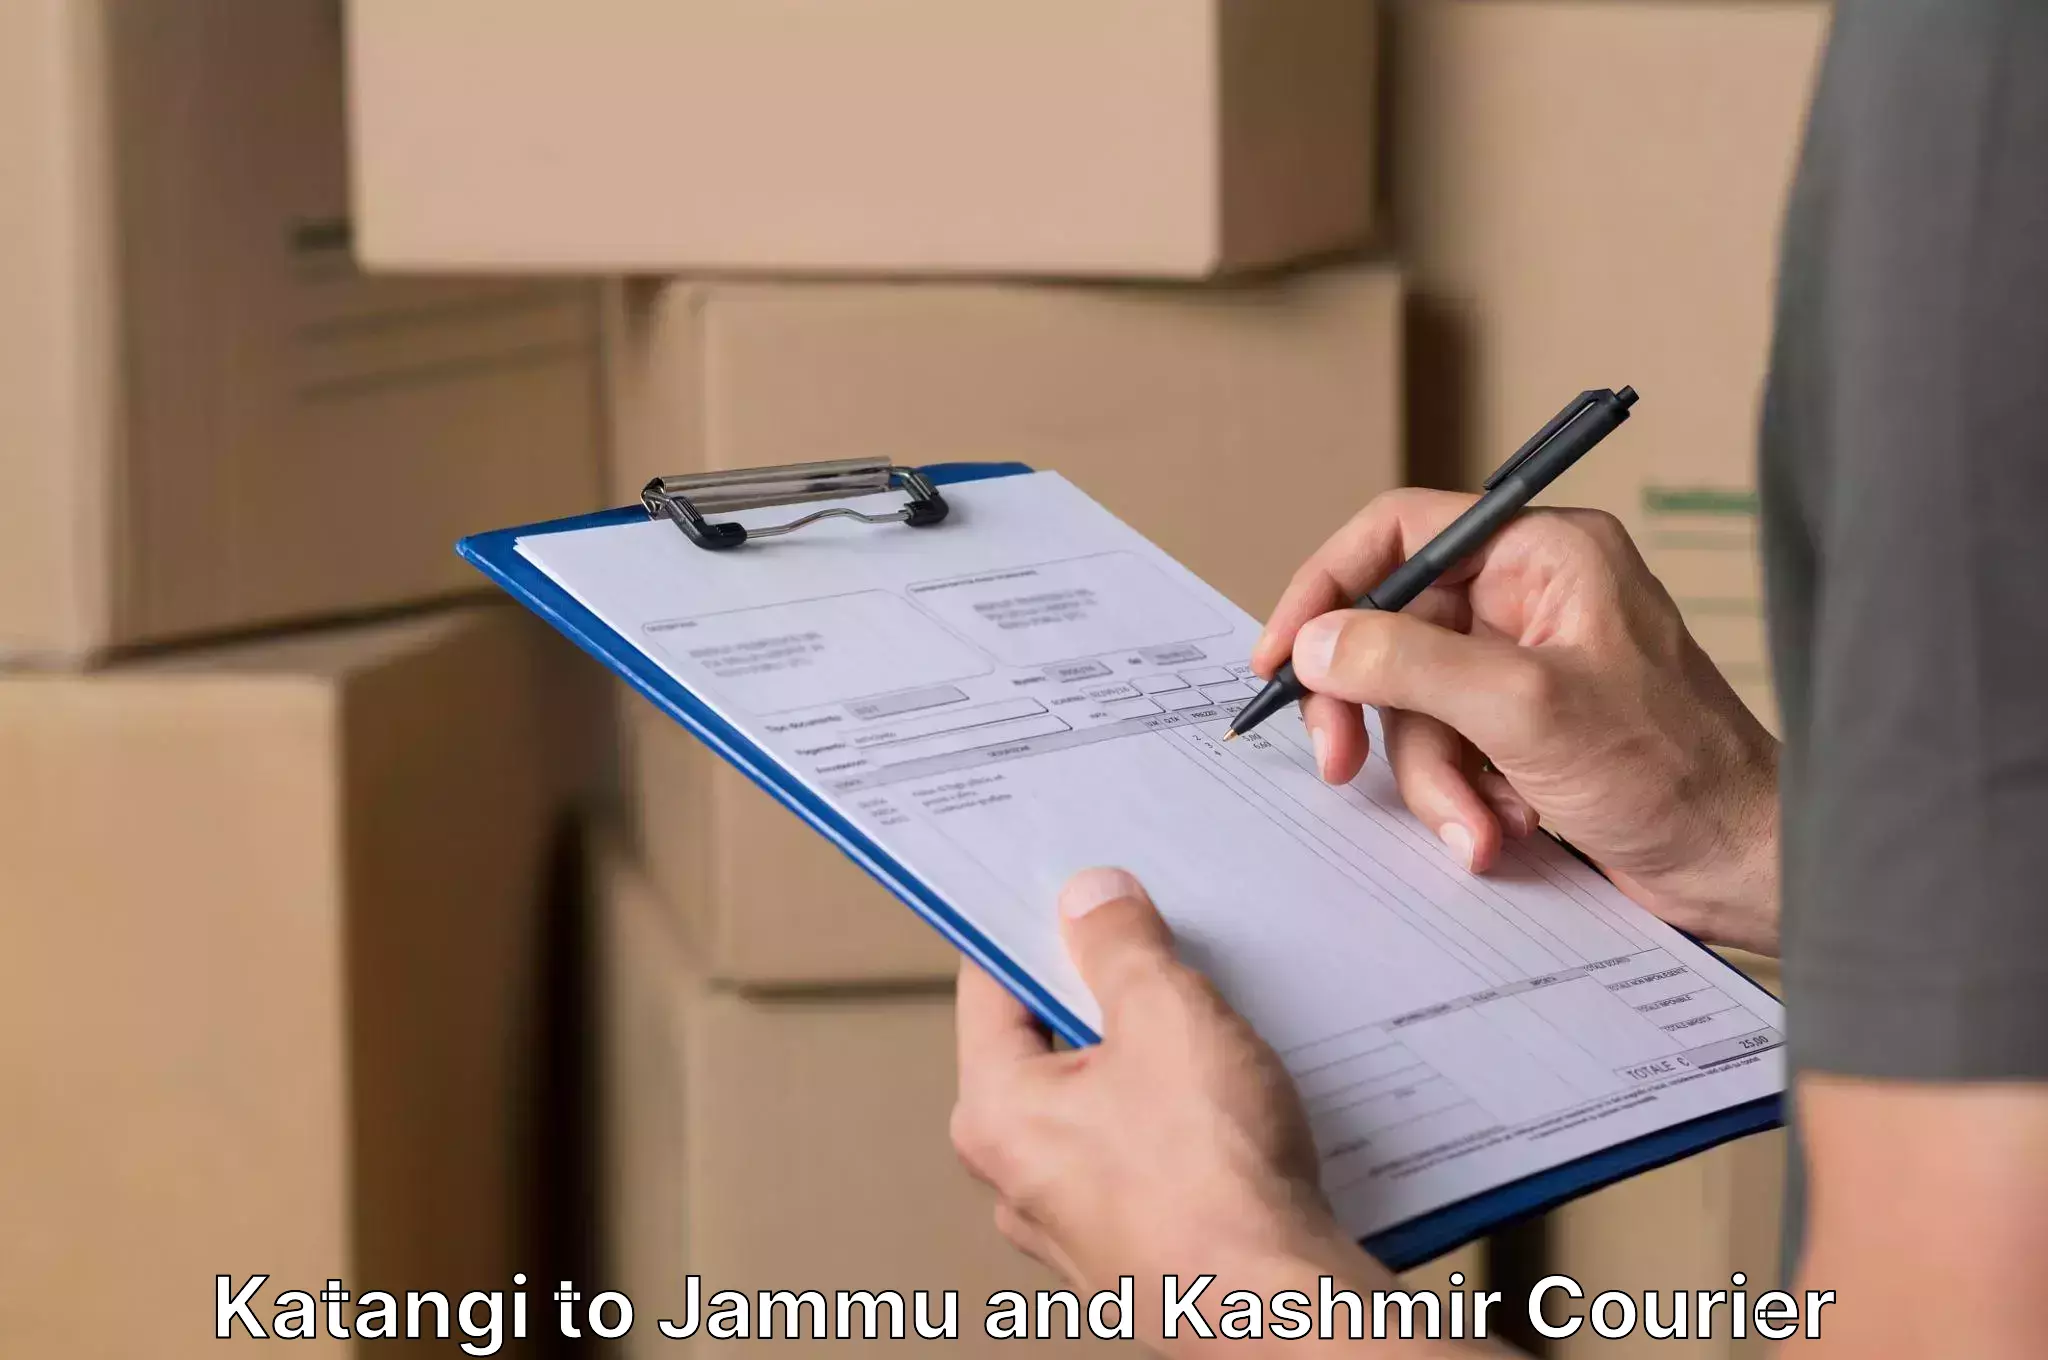 Reliable furniture shifting Katangi to Jammu and Kashmir